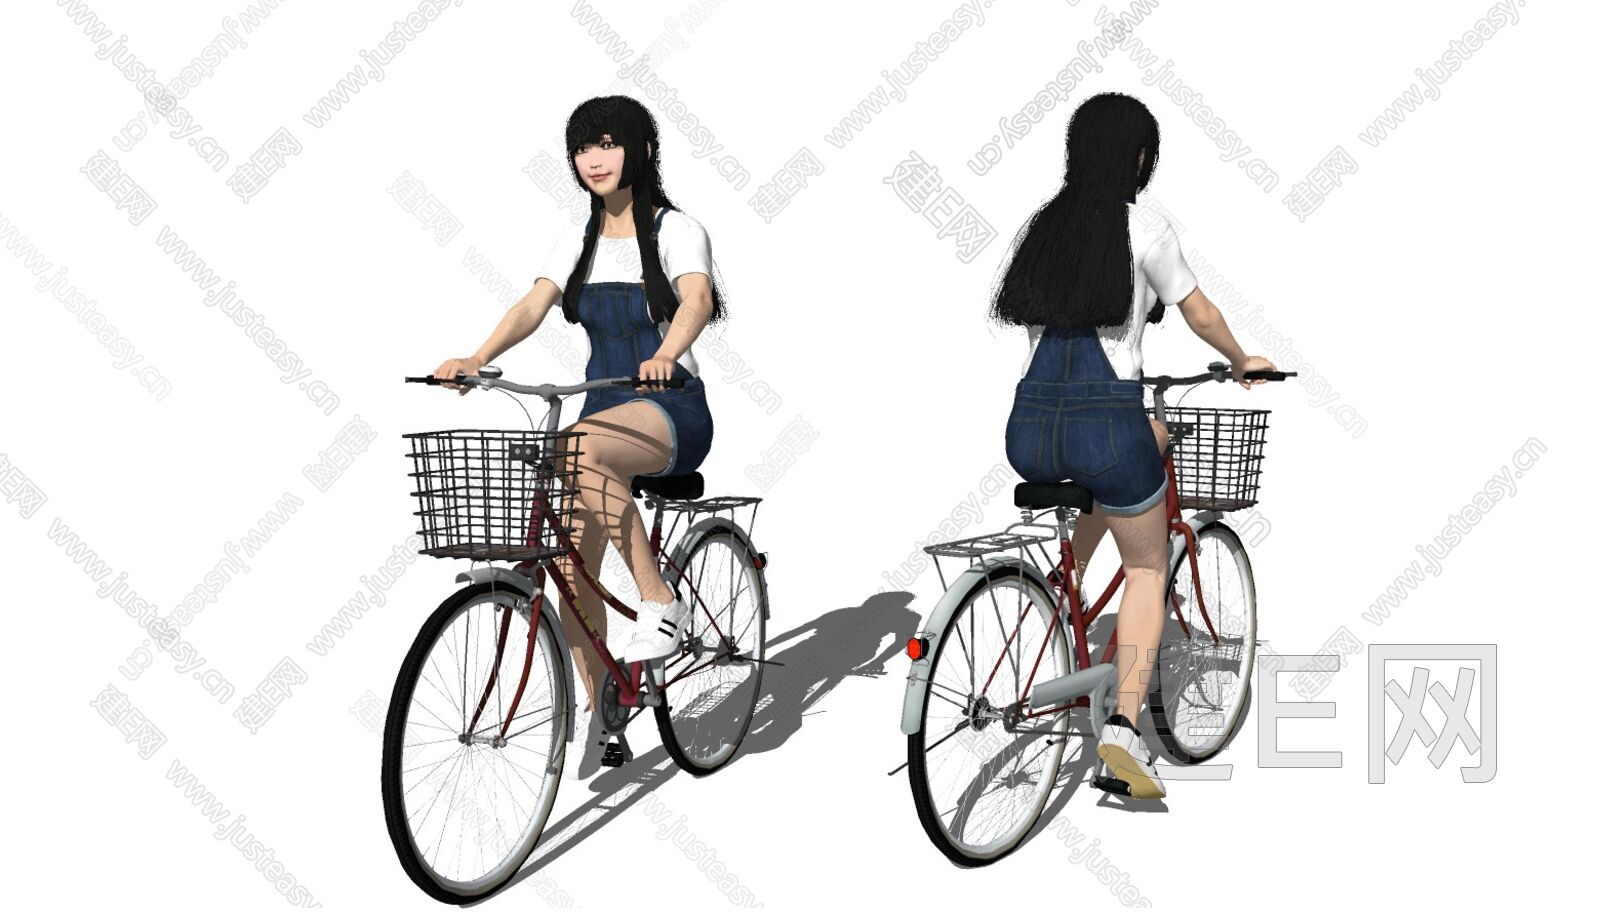 红苹果牌 原装正品20寸女式车/自行车 学生车 淑女车 韩版车_mengya20100114